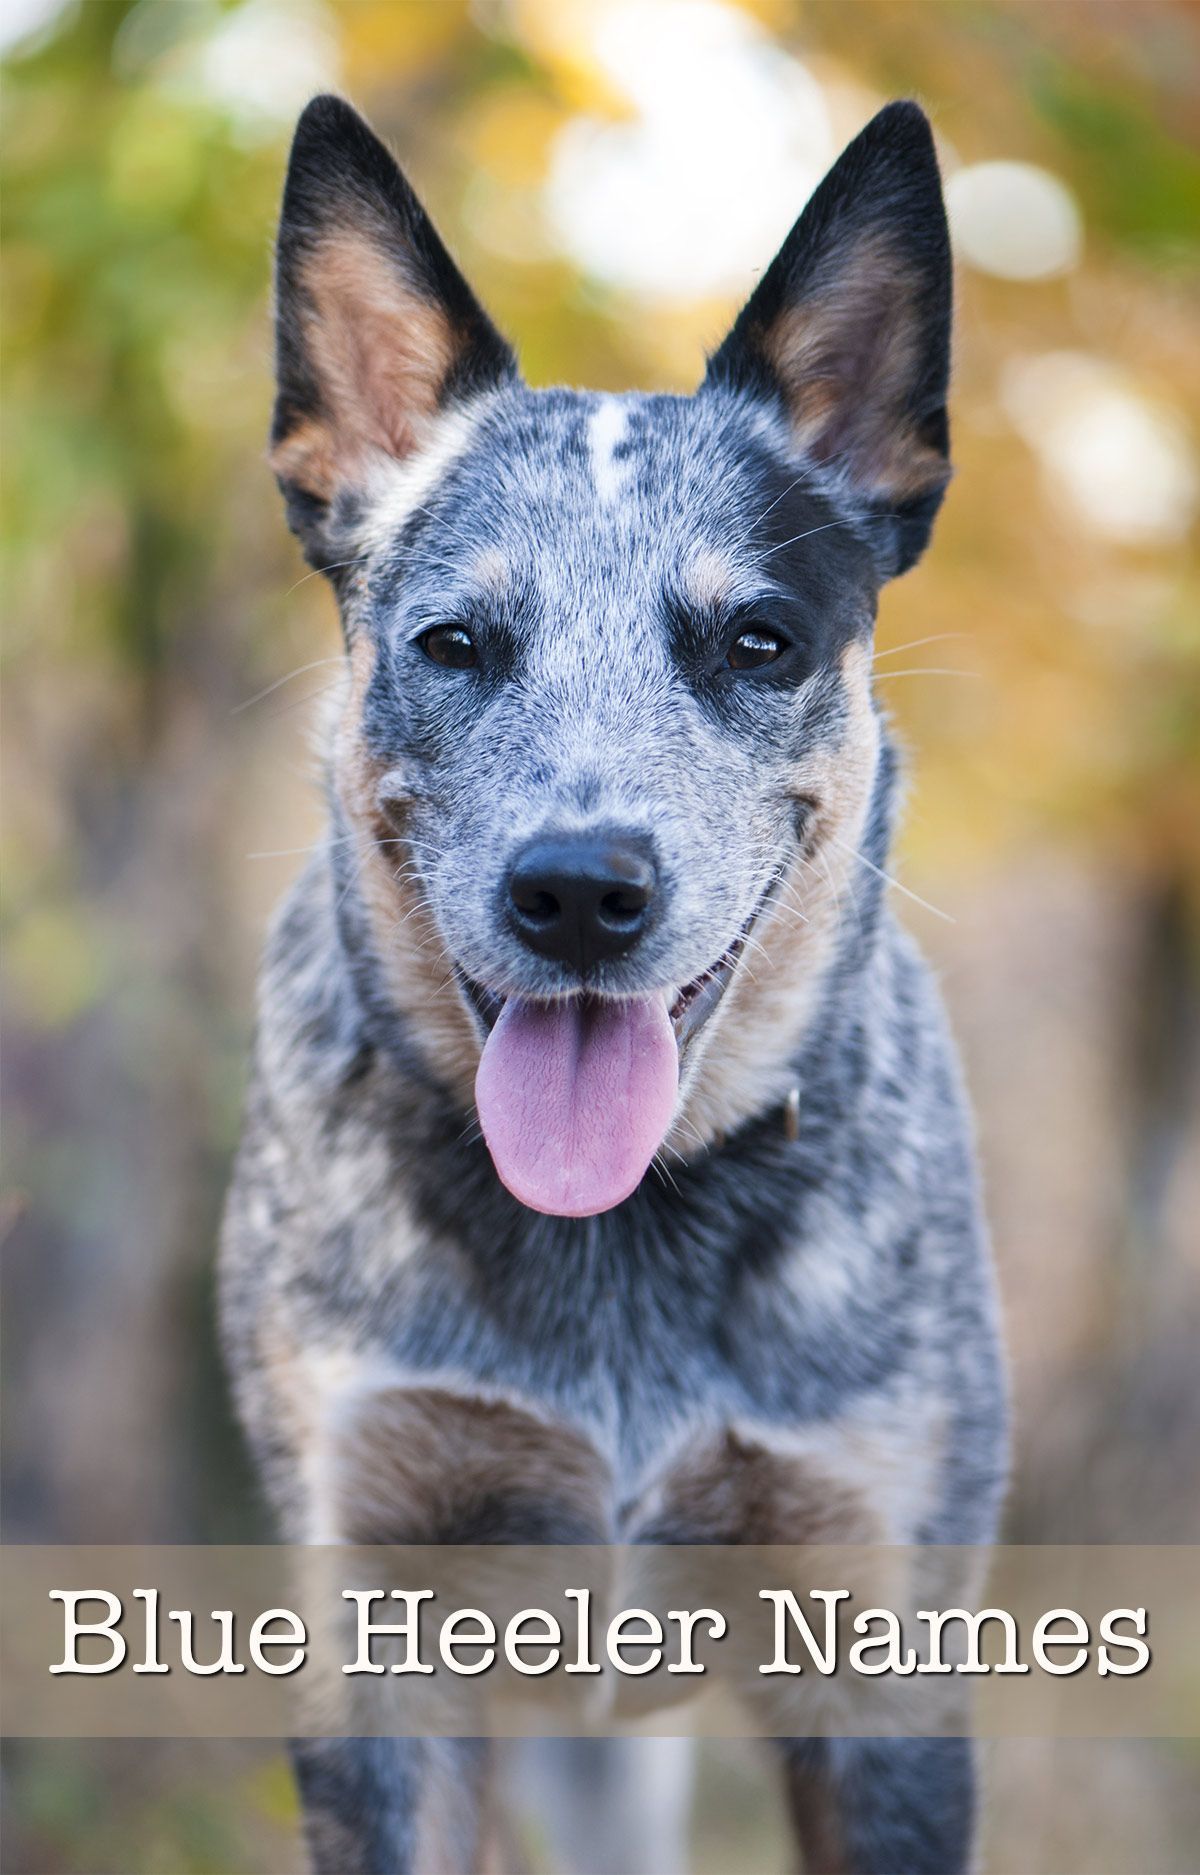 Blue Heeler-namen - 200 briljante ideeën voor puppy's van Australian Cattle Dog